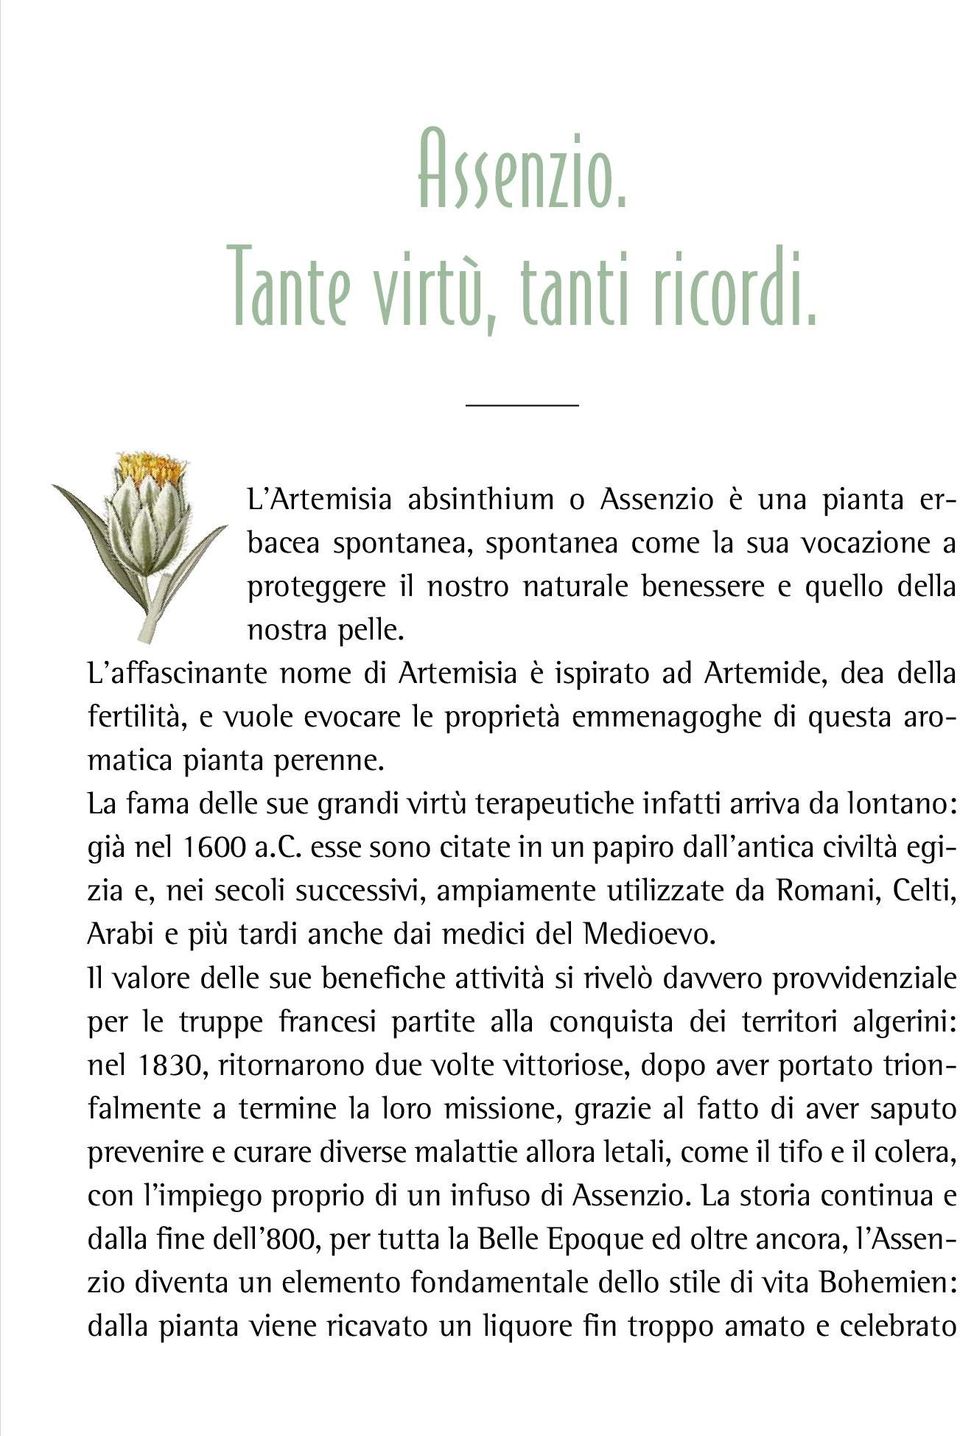 L affascinante nome di Artemisia è ispirato ad Artemide, dea della fertilità, e vuole evocare le proprietà emmenagoghe di questa aromatica pianta perenne.